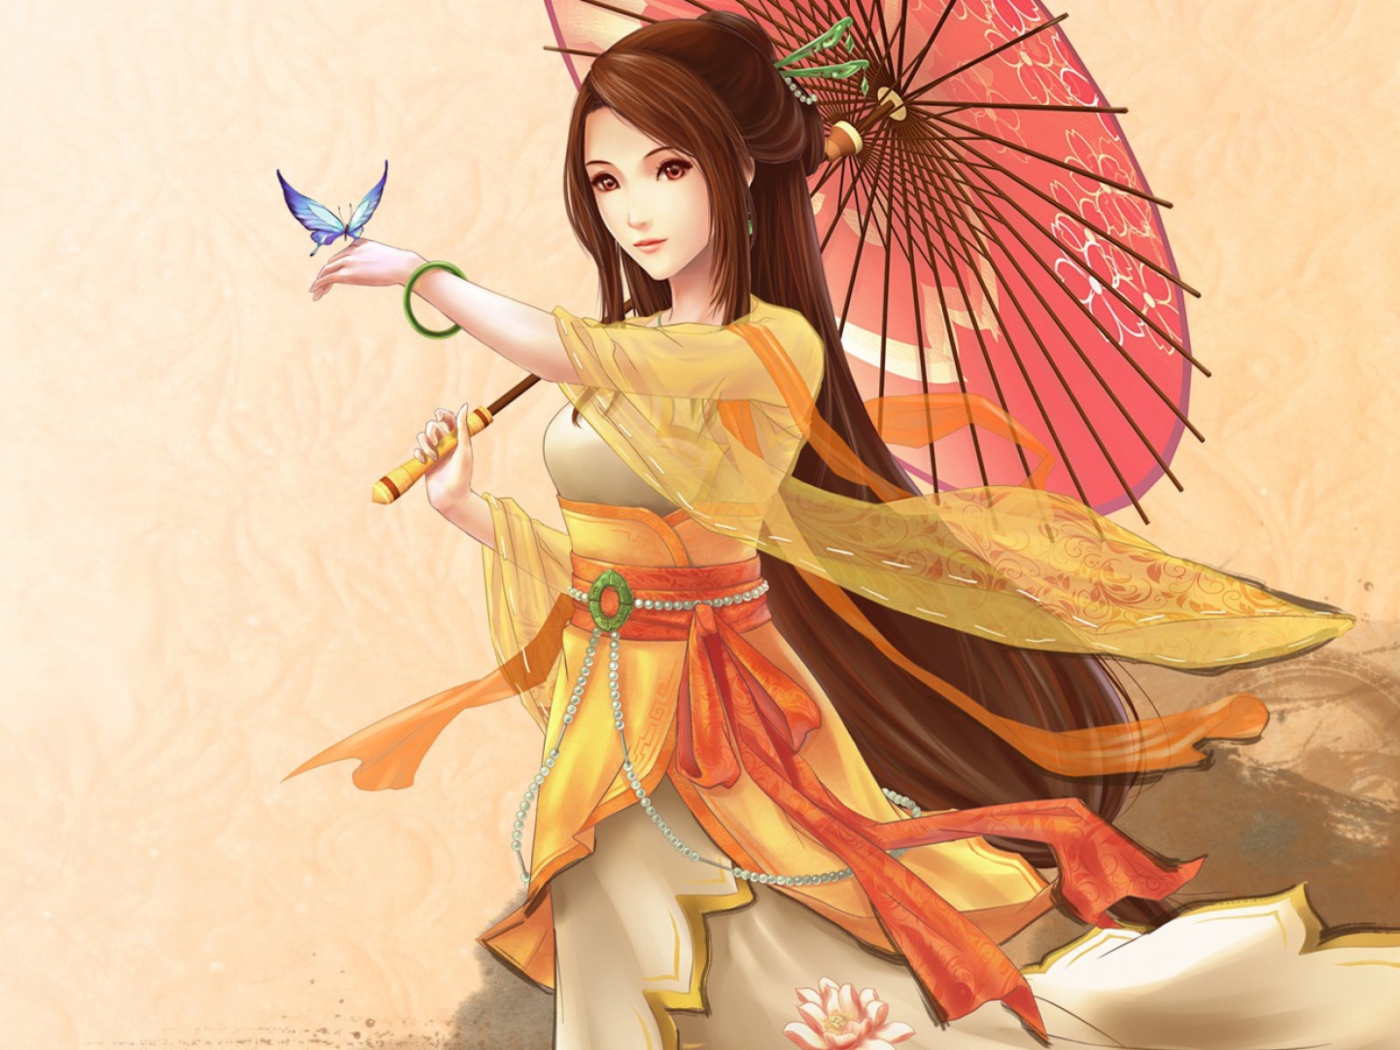 Sfondi Japanese Woman & Butterfly 1400x1050